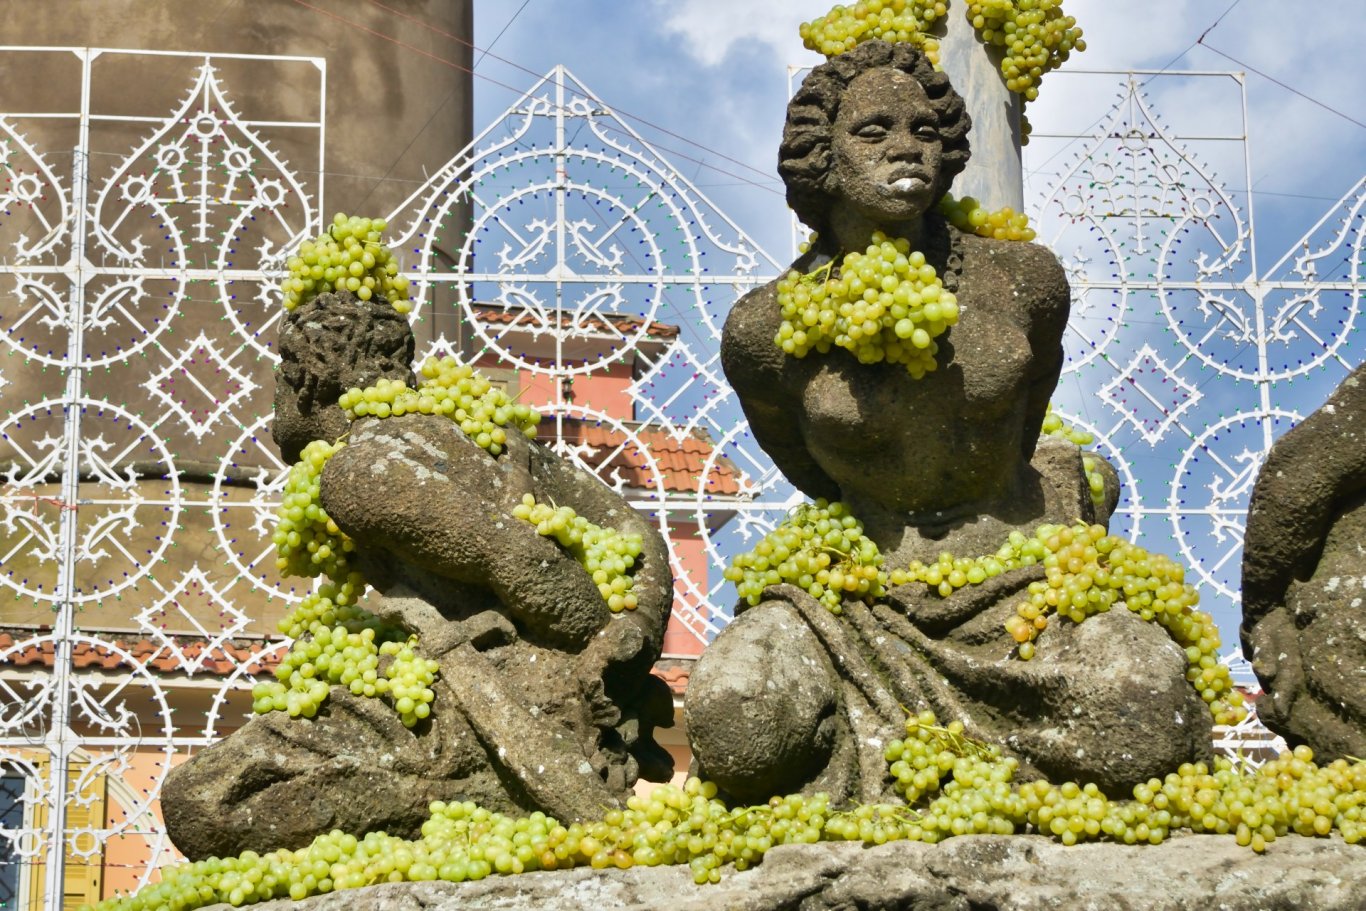 Particolare della Fontana dei Mori di Marino, decorata con grappoli d'uva nei giorni di festa.